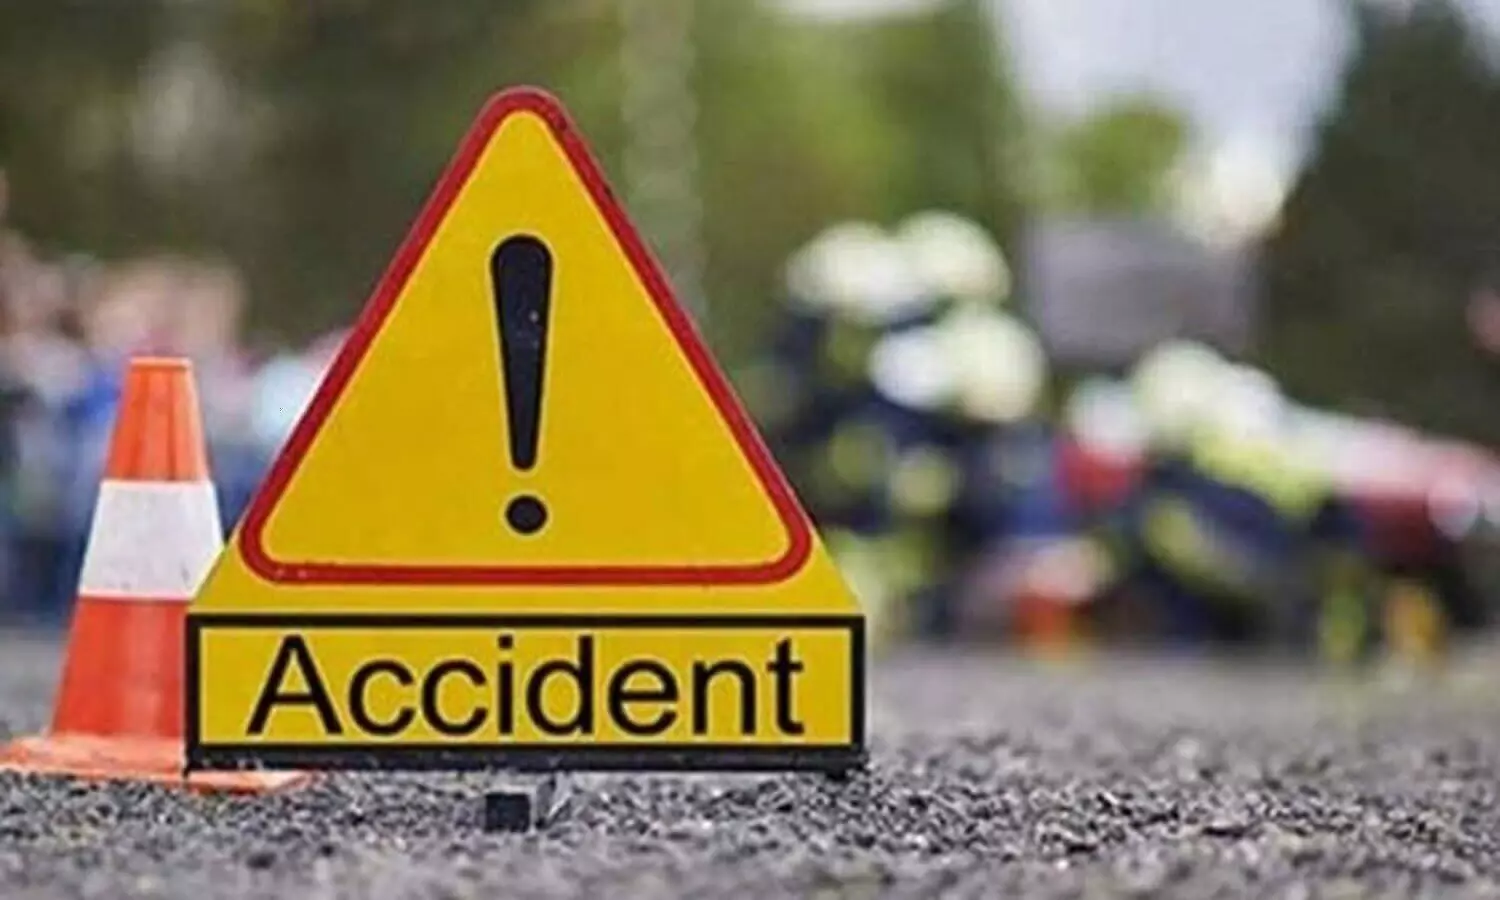 Jhansi Road Accident: कार को बचाने के चक्कर में पिकप व दो ट्रक आपस में भिड़े, दो की मौत एक घायल